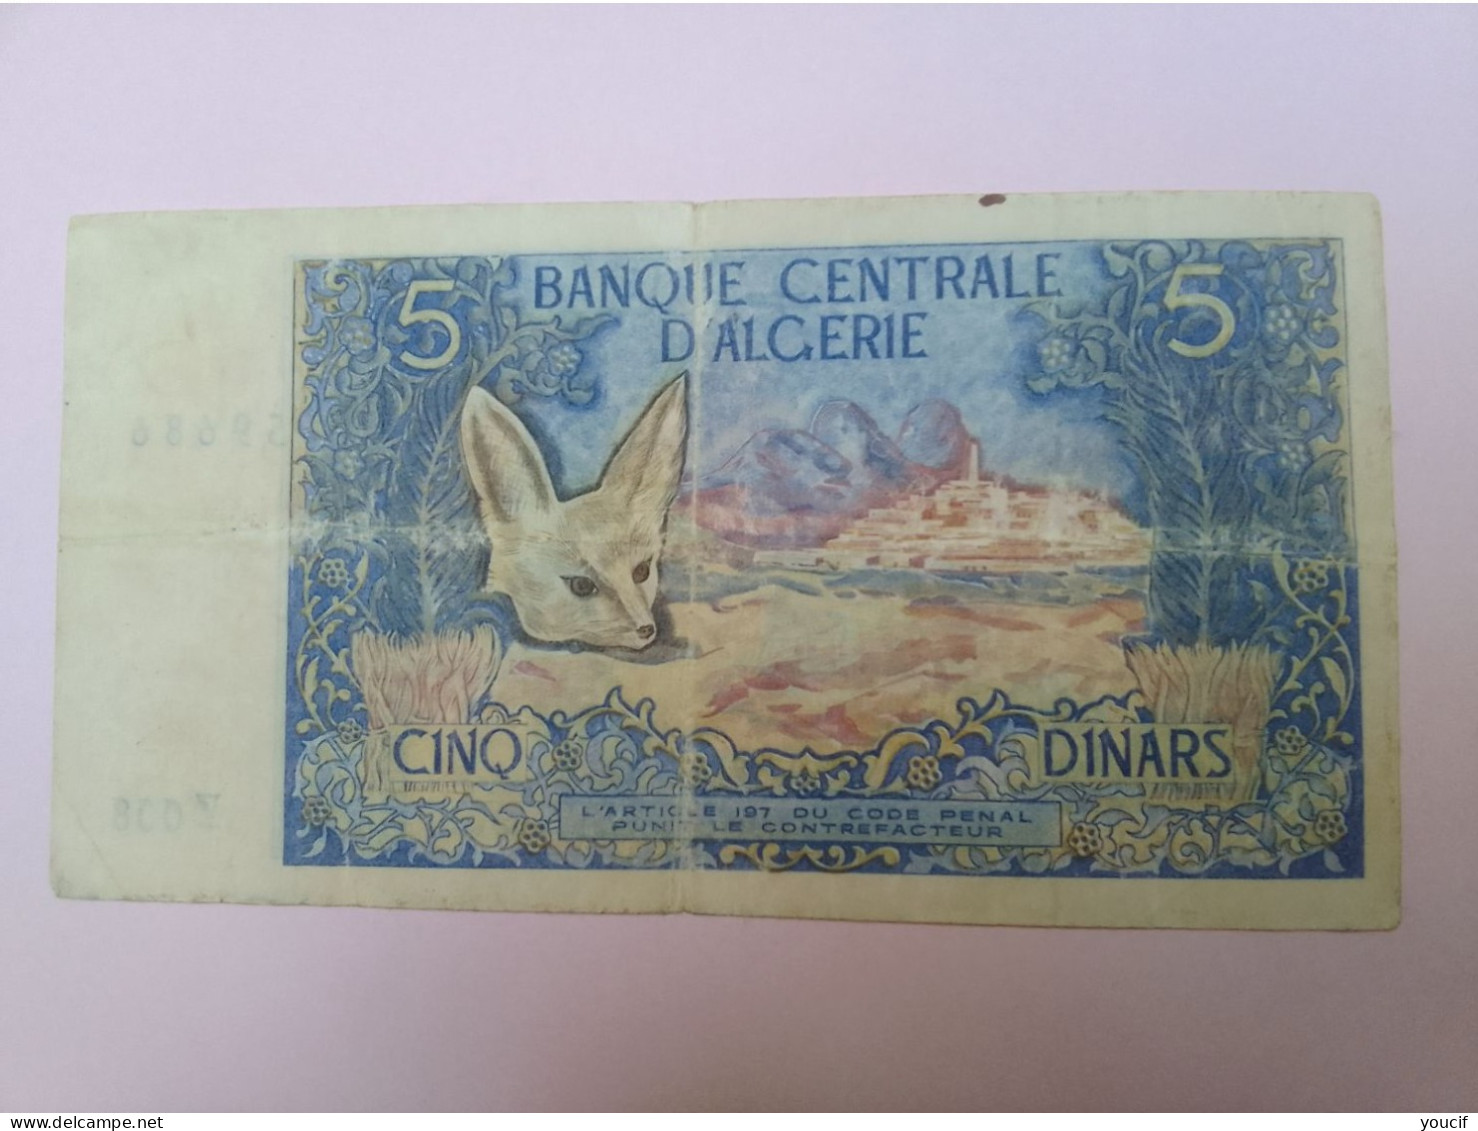 Billet De Banque D Algerie 5 Dinars Du 1 Novembre 1970 - Algerien